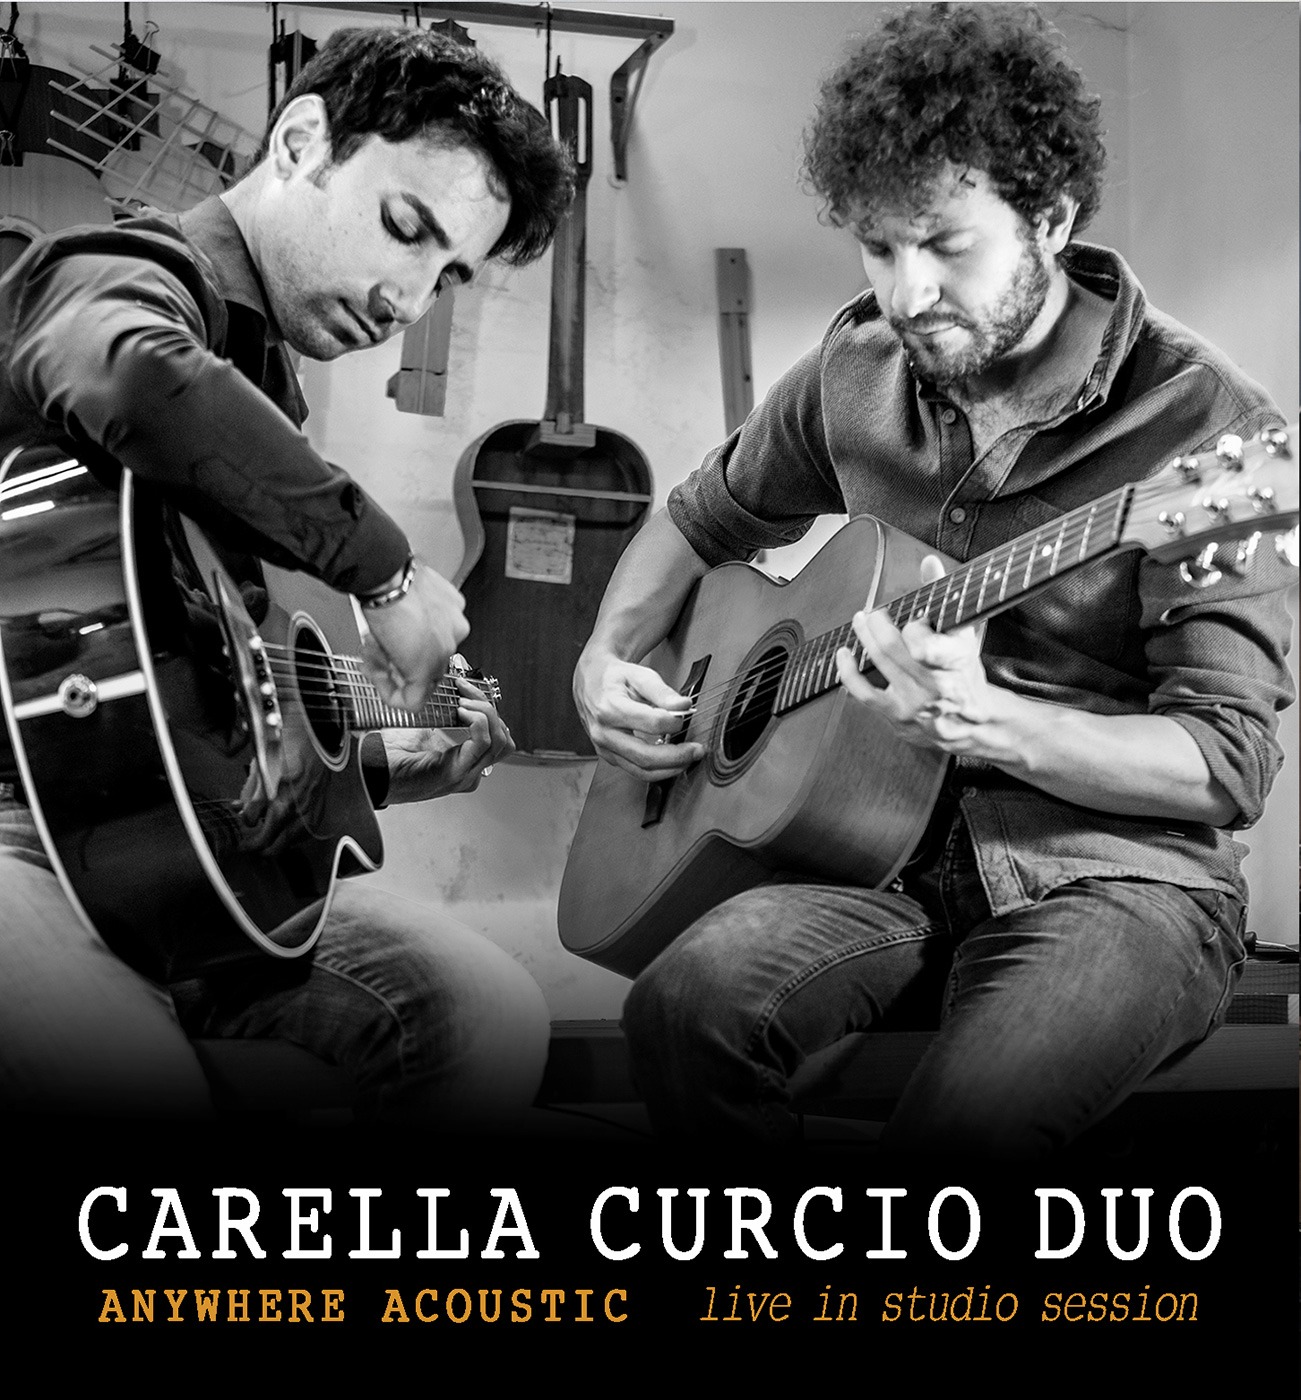 Carella Curcio Duo